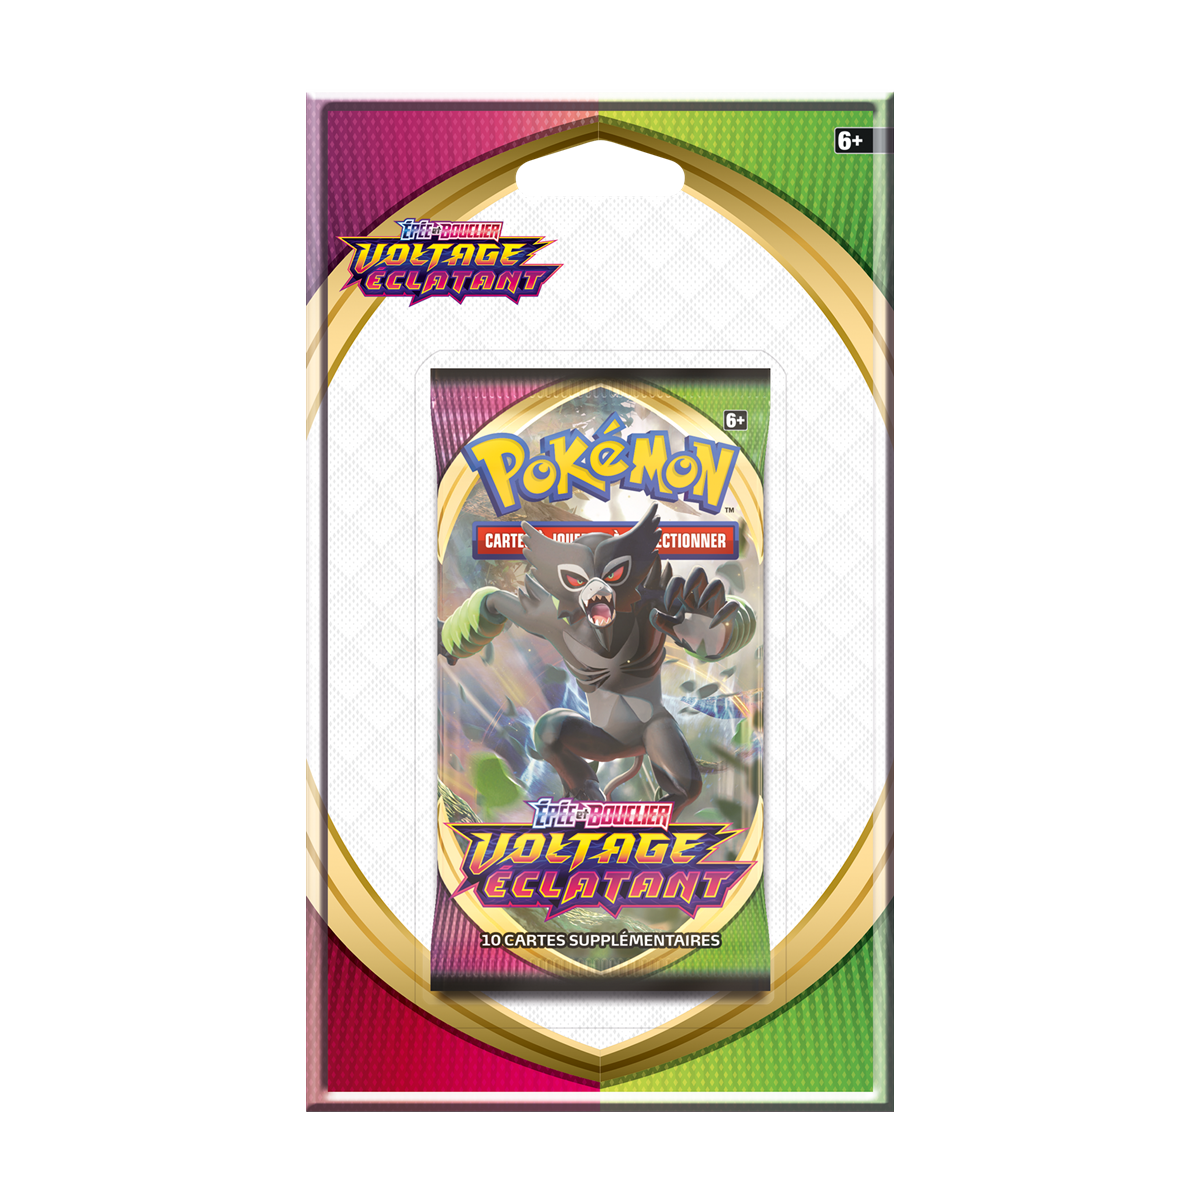 Pokémon - Booster Blister - Épée et Bouclier : Voltage Éclatant [EB04] - FR